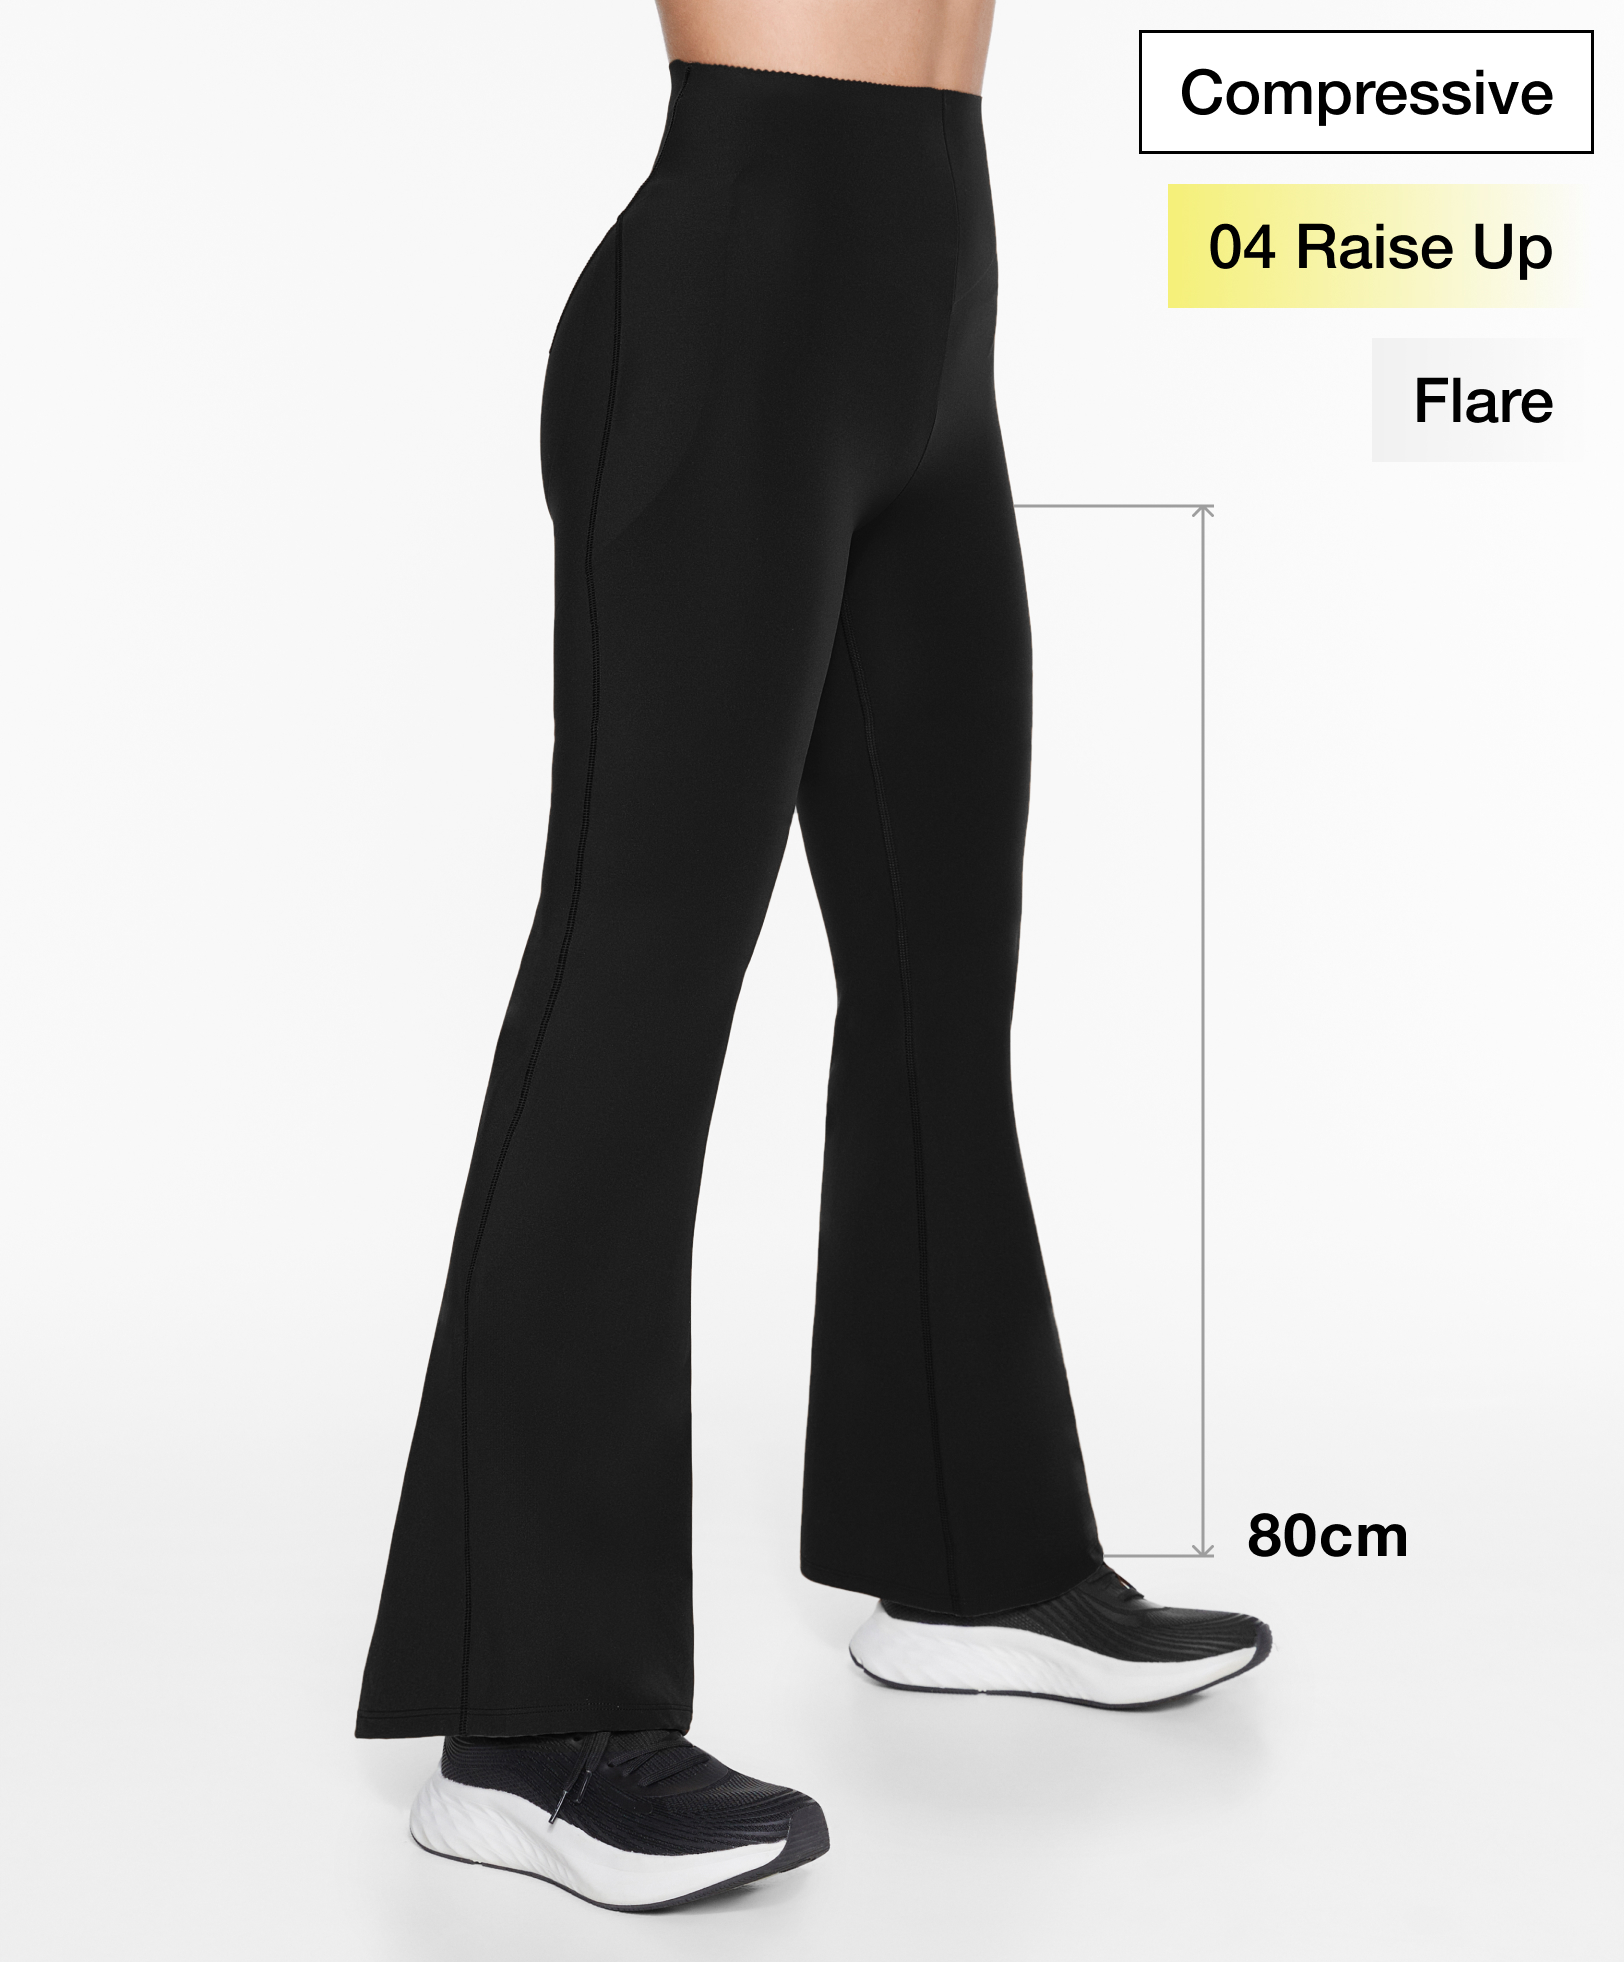 Women's flared trousers, Sport